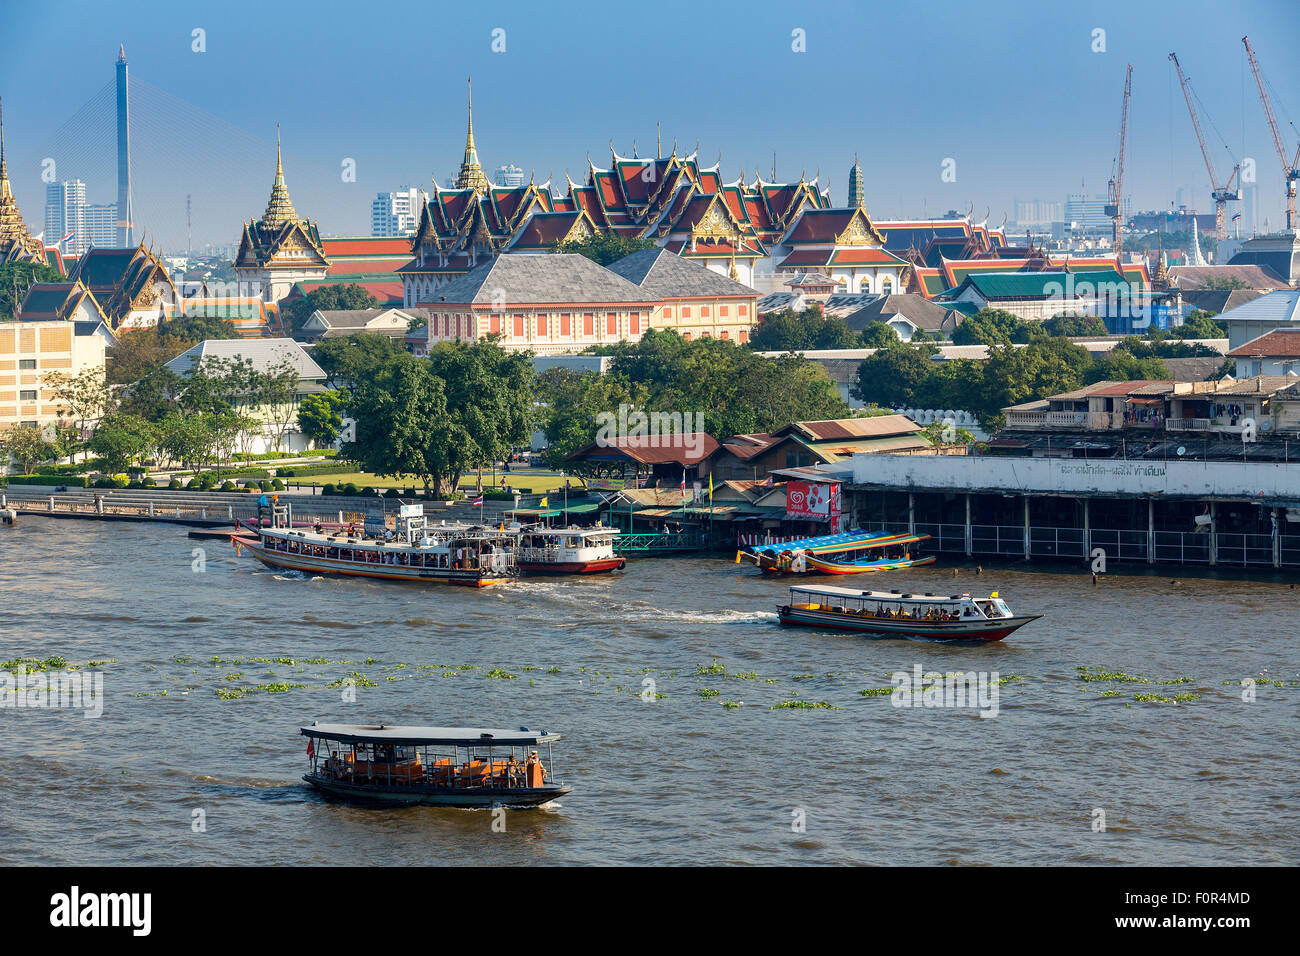 Thailande, Bangkok, Traffic on the Chao Phraya River Stock Photo